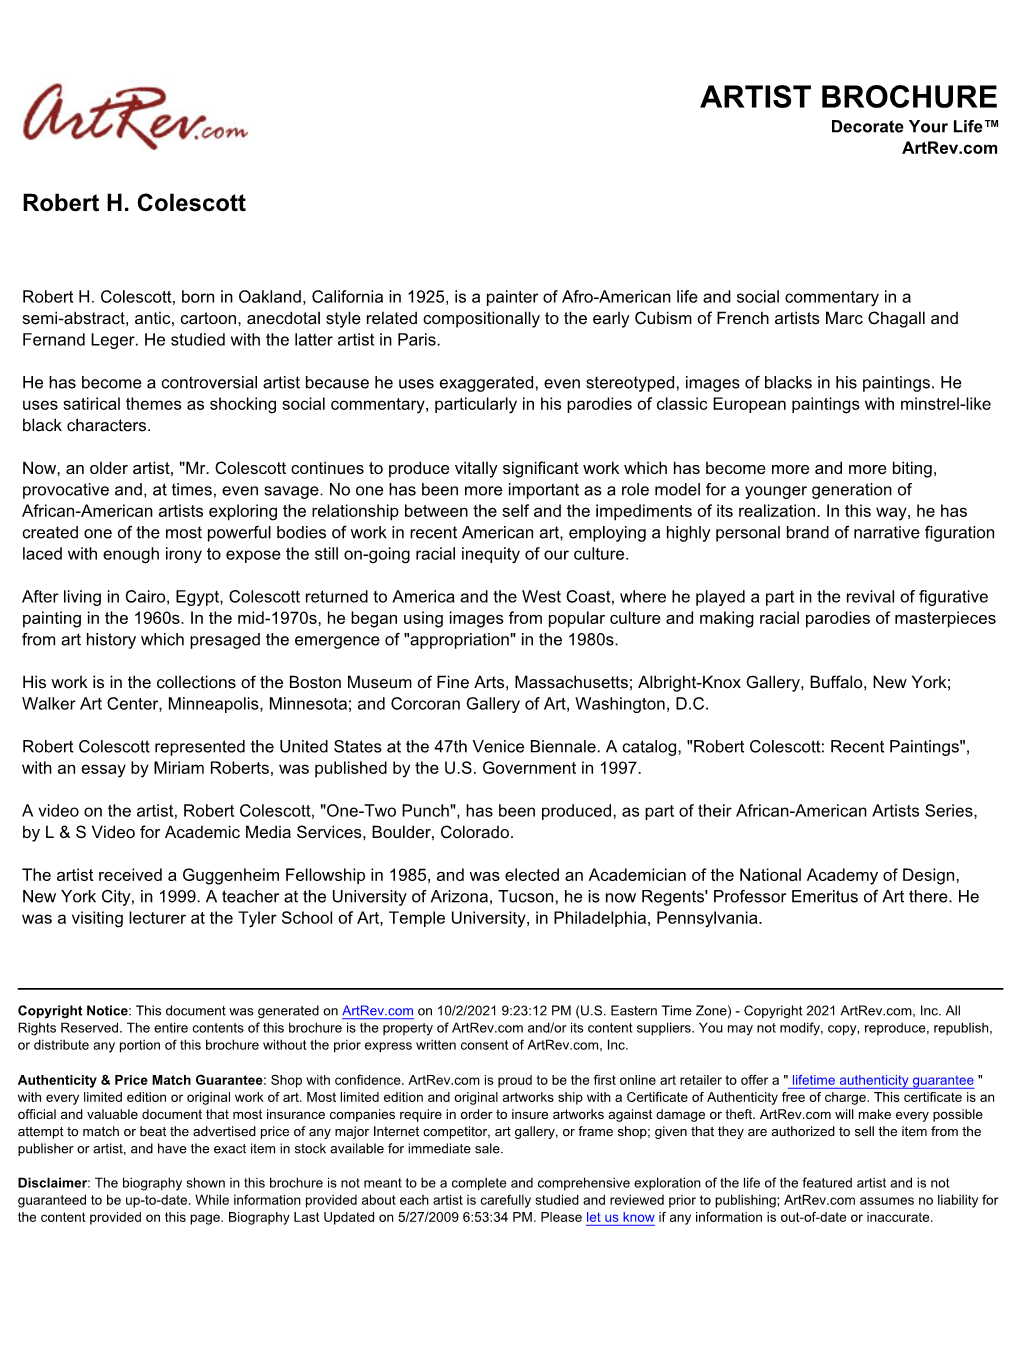 Robert H. Colescott Biography